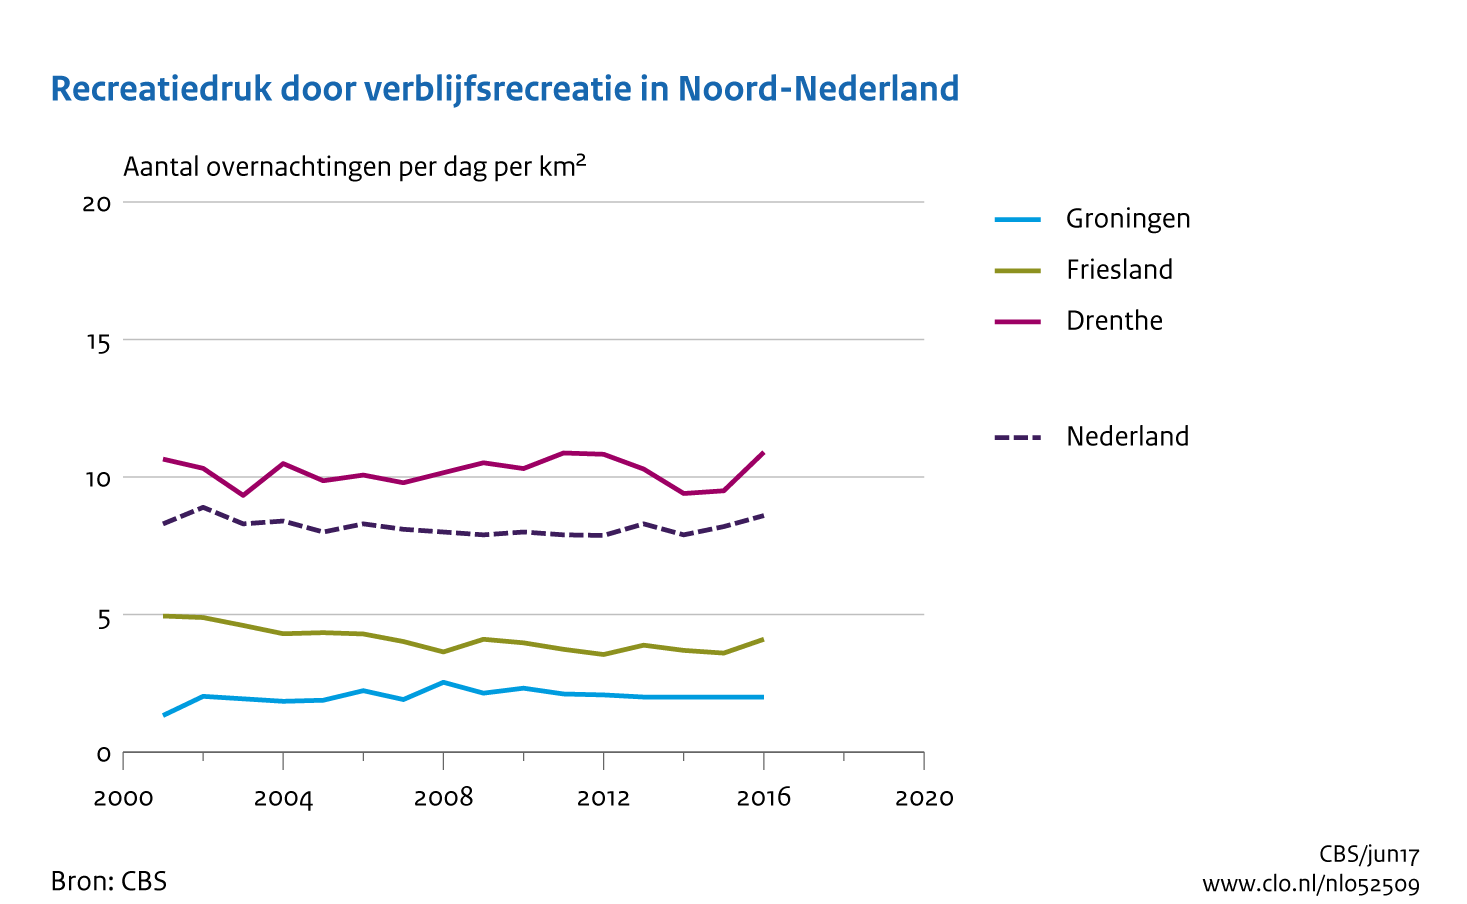 Figuur recreatiedruk door verblijfsrecreatie per provincie Noord Nederland. In de rest van de tekst wordt deze figuur uitgebreider uitgelegd.